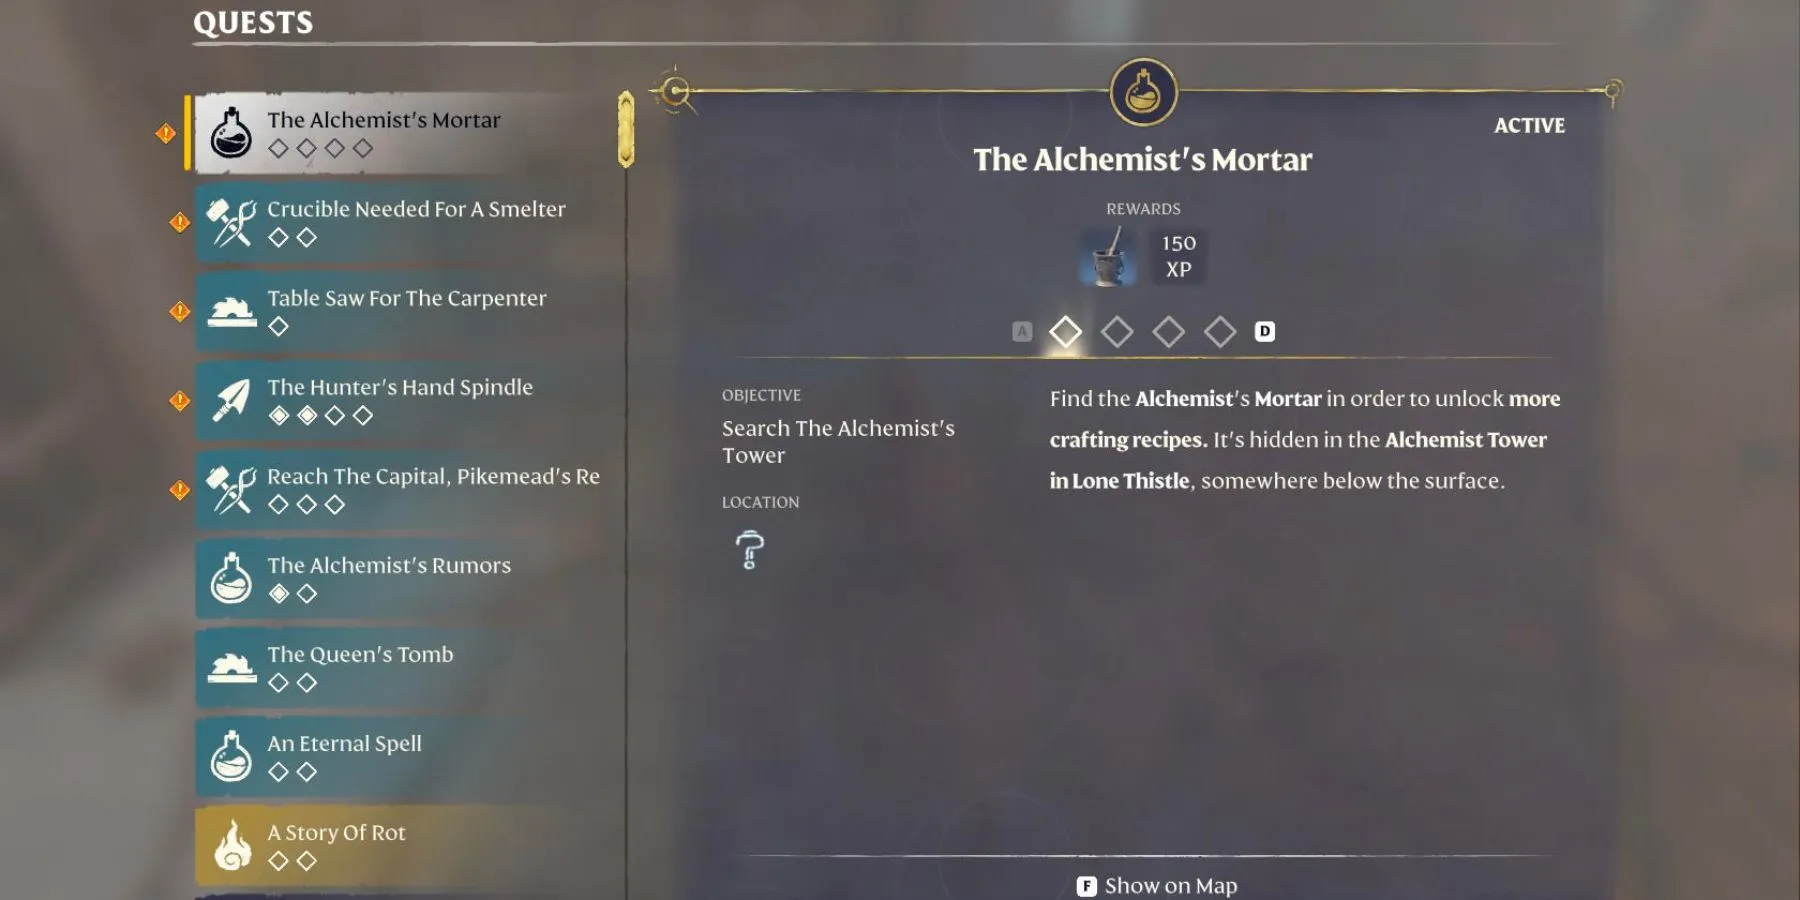 alchemist's mortar quest enshrouded